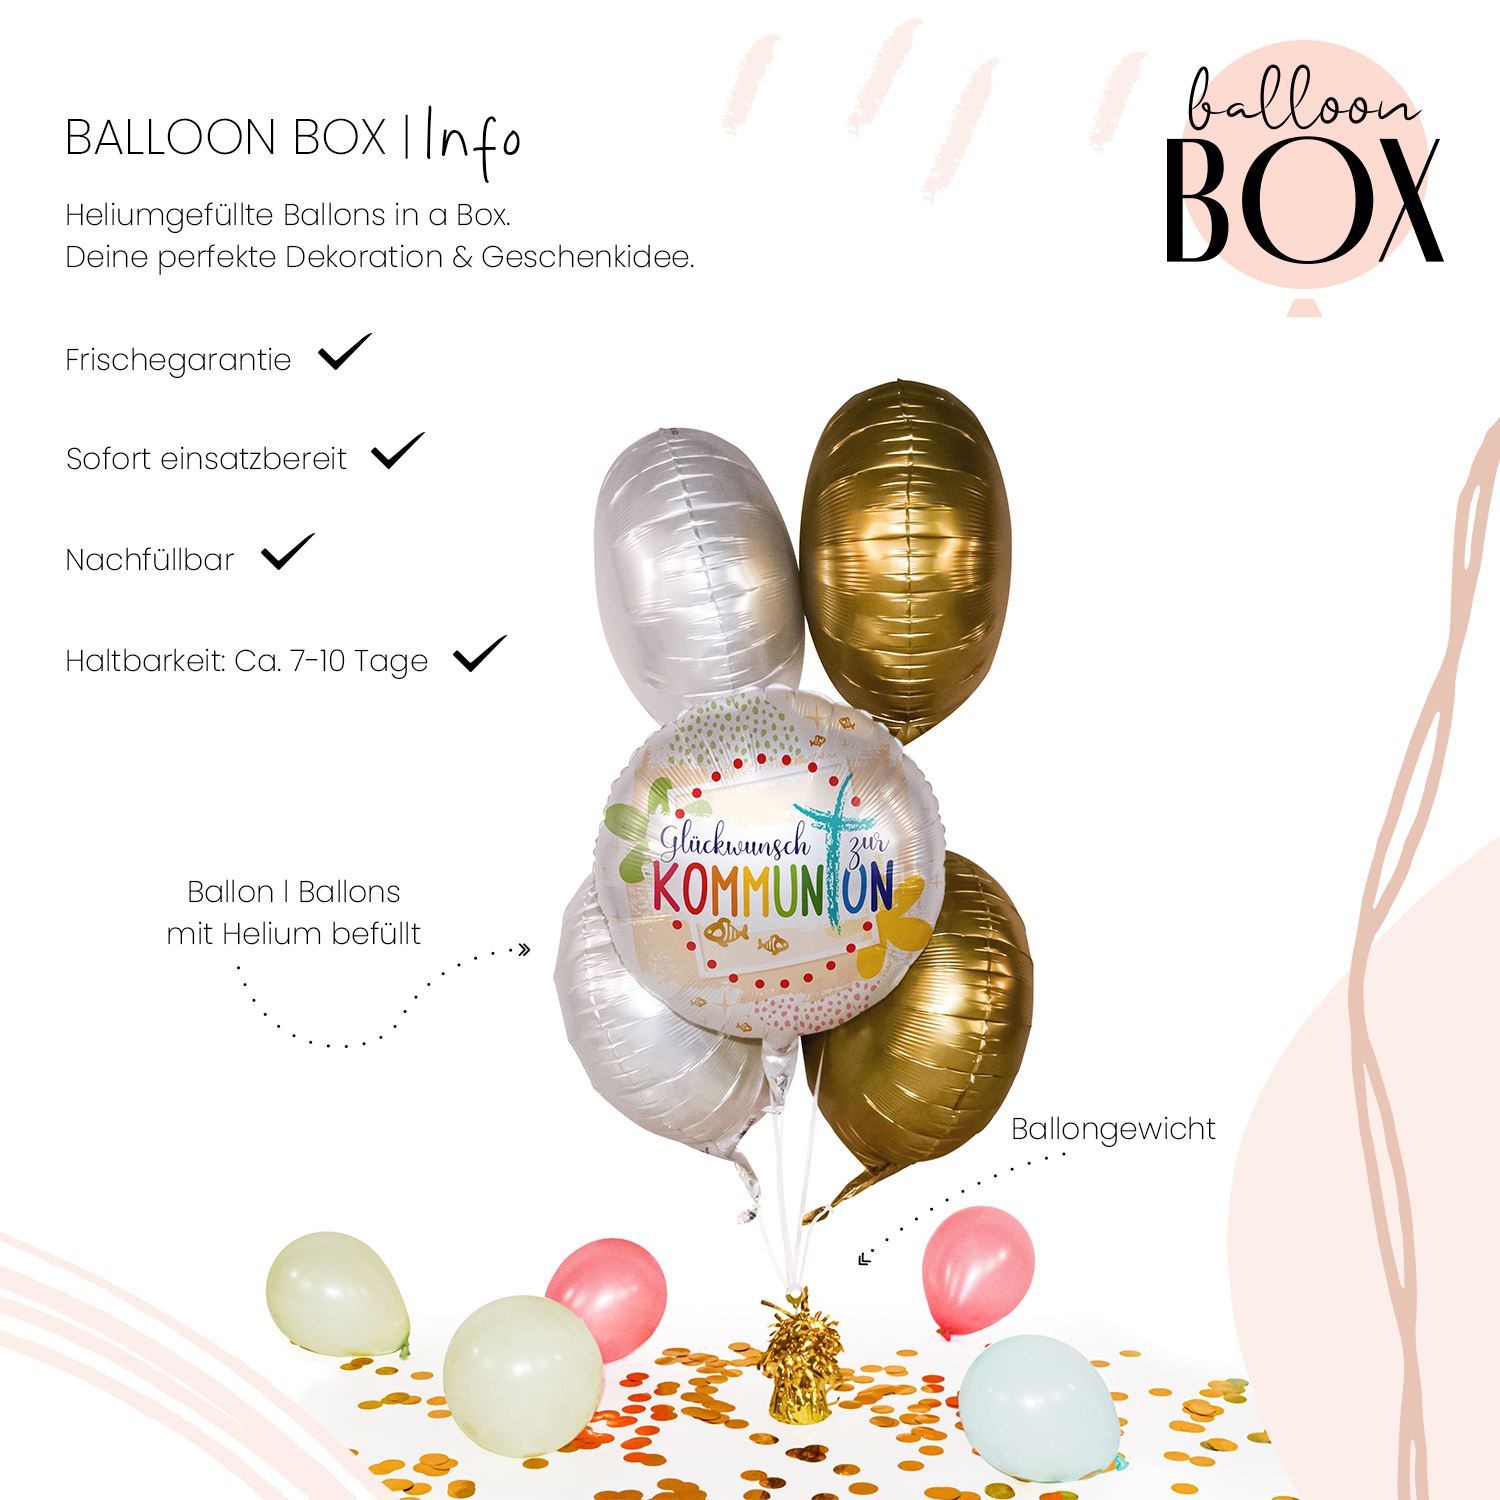 Heliumballon in a Box - Kommunion Glückwunsch